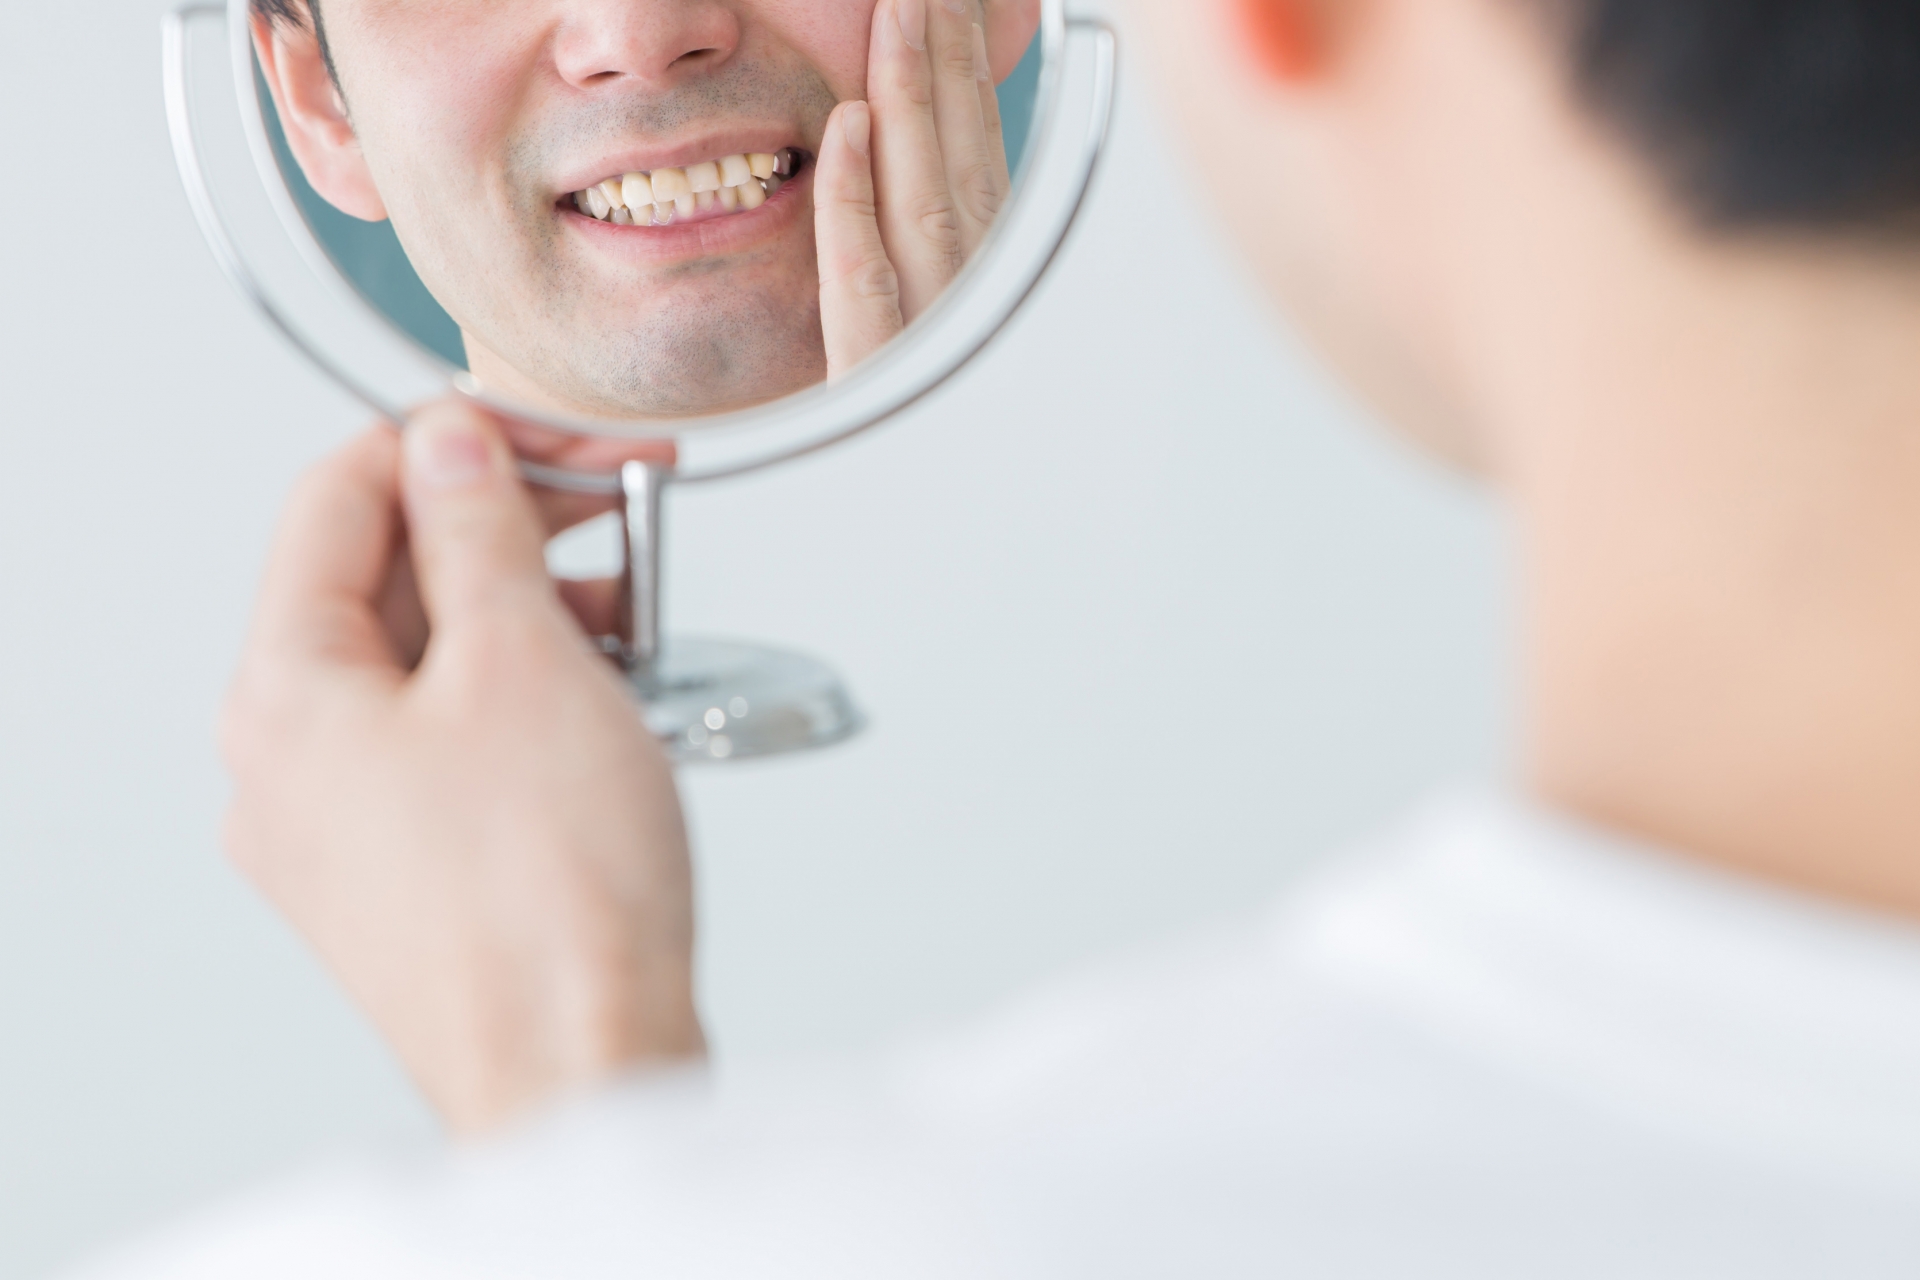 鏡を見て歯を確認している人